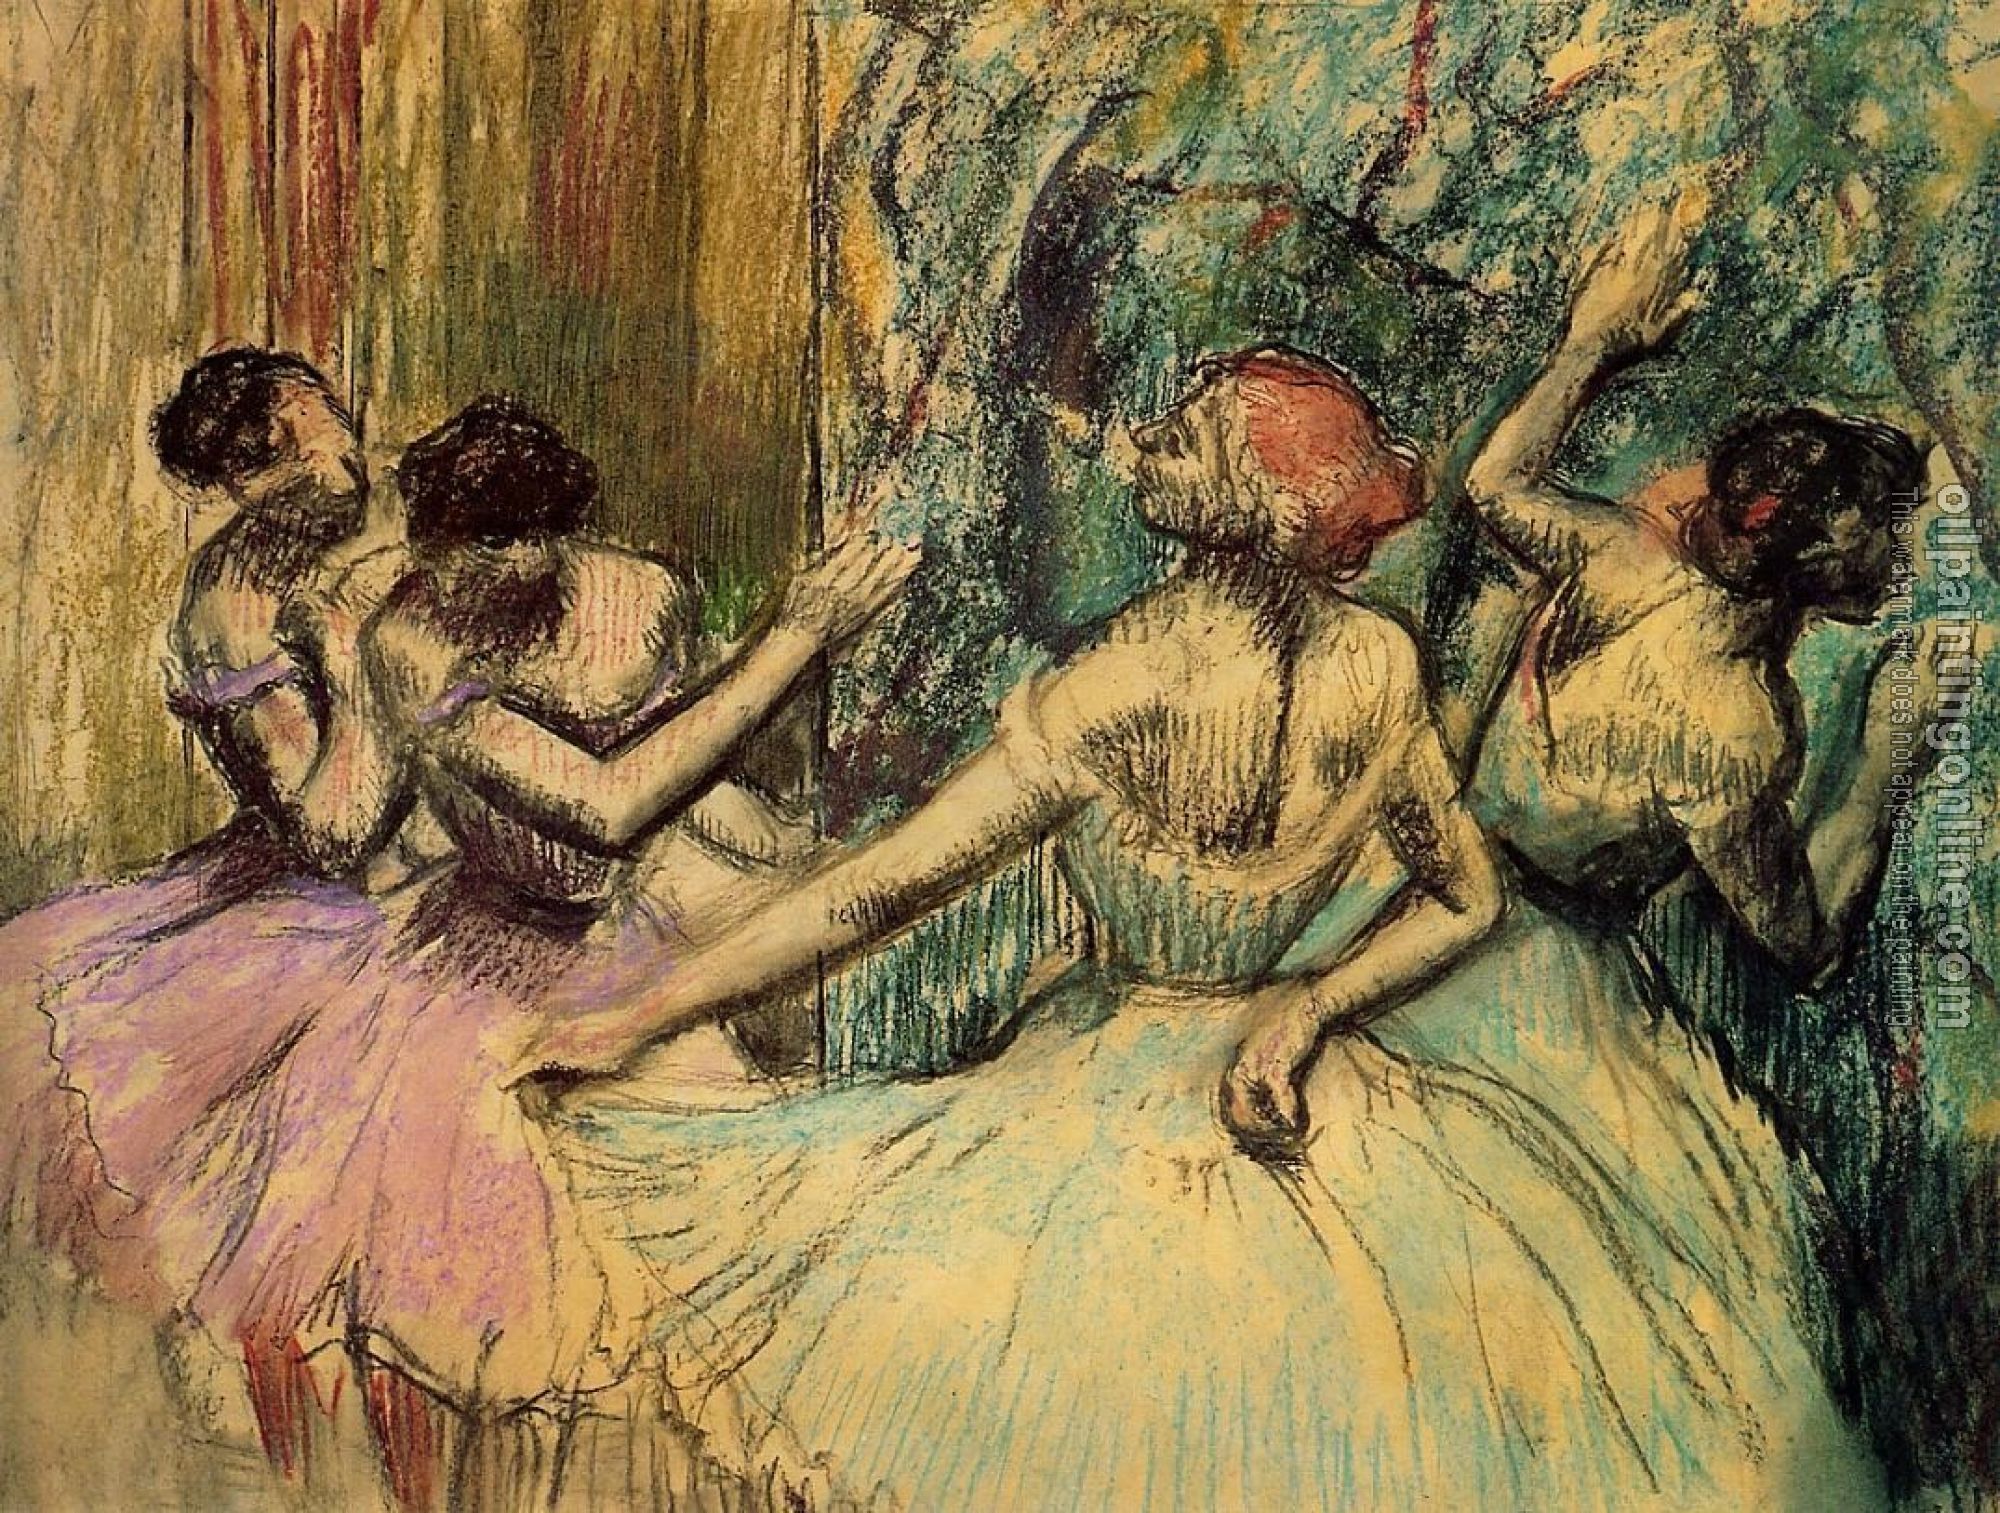 Degas, Edgar - Dancers in the Wings